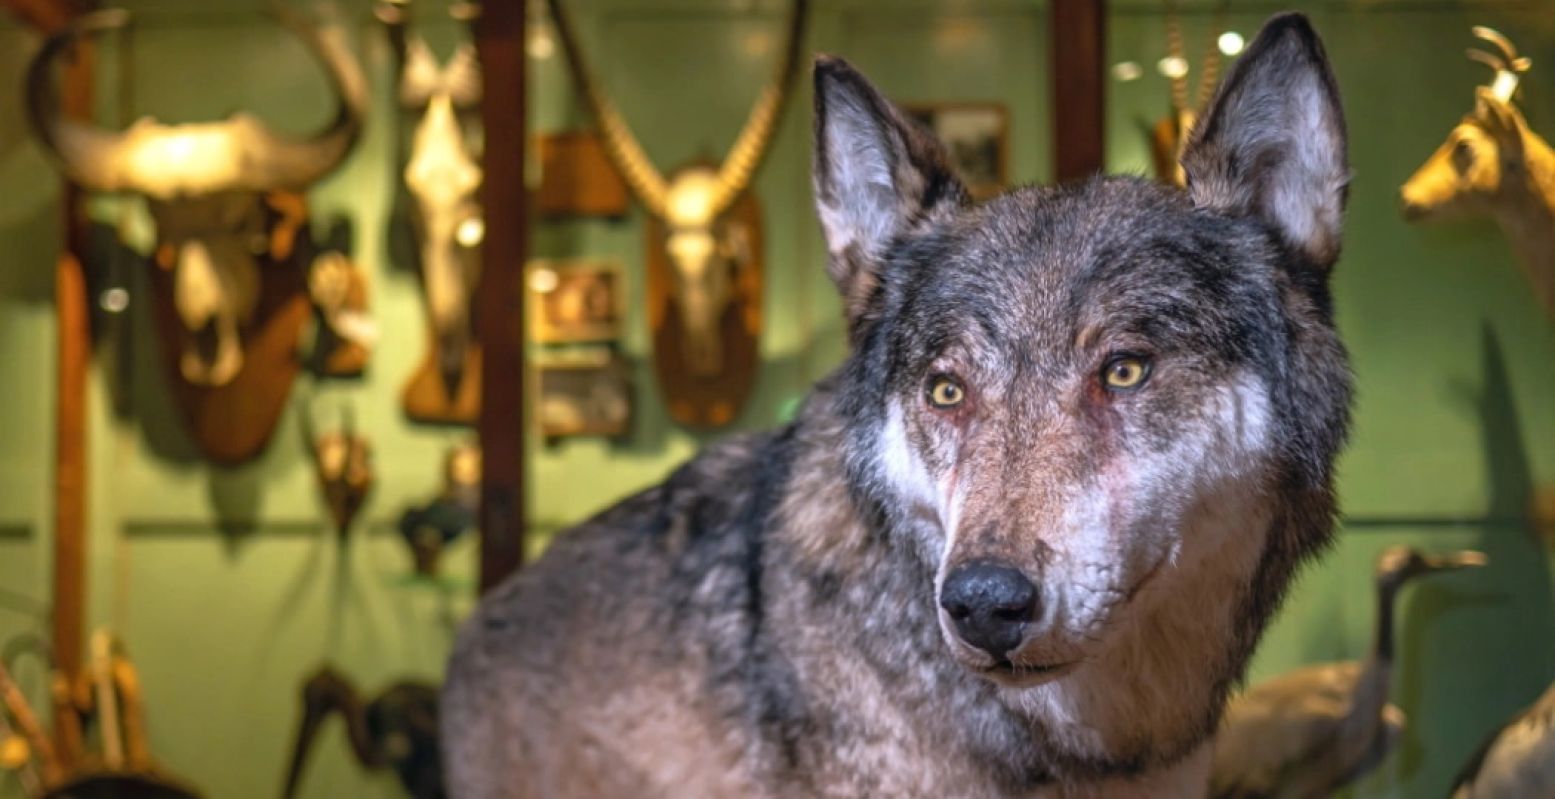 De wolf is terug! Goed nieuws? Vel zelf je oordeel tijdens de tentoonstelling 'Te wild voor jou?'. Foto: Museum Natura Docet